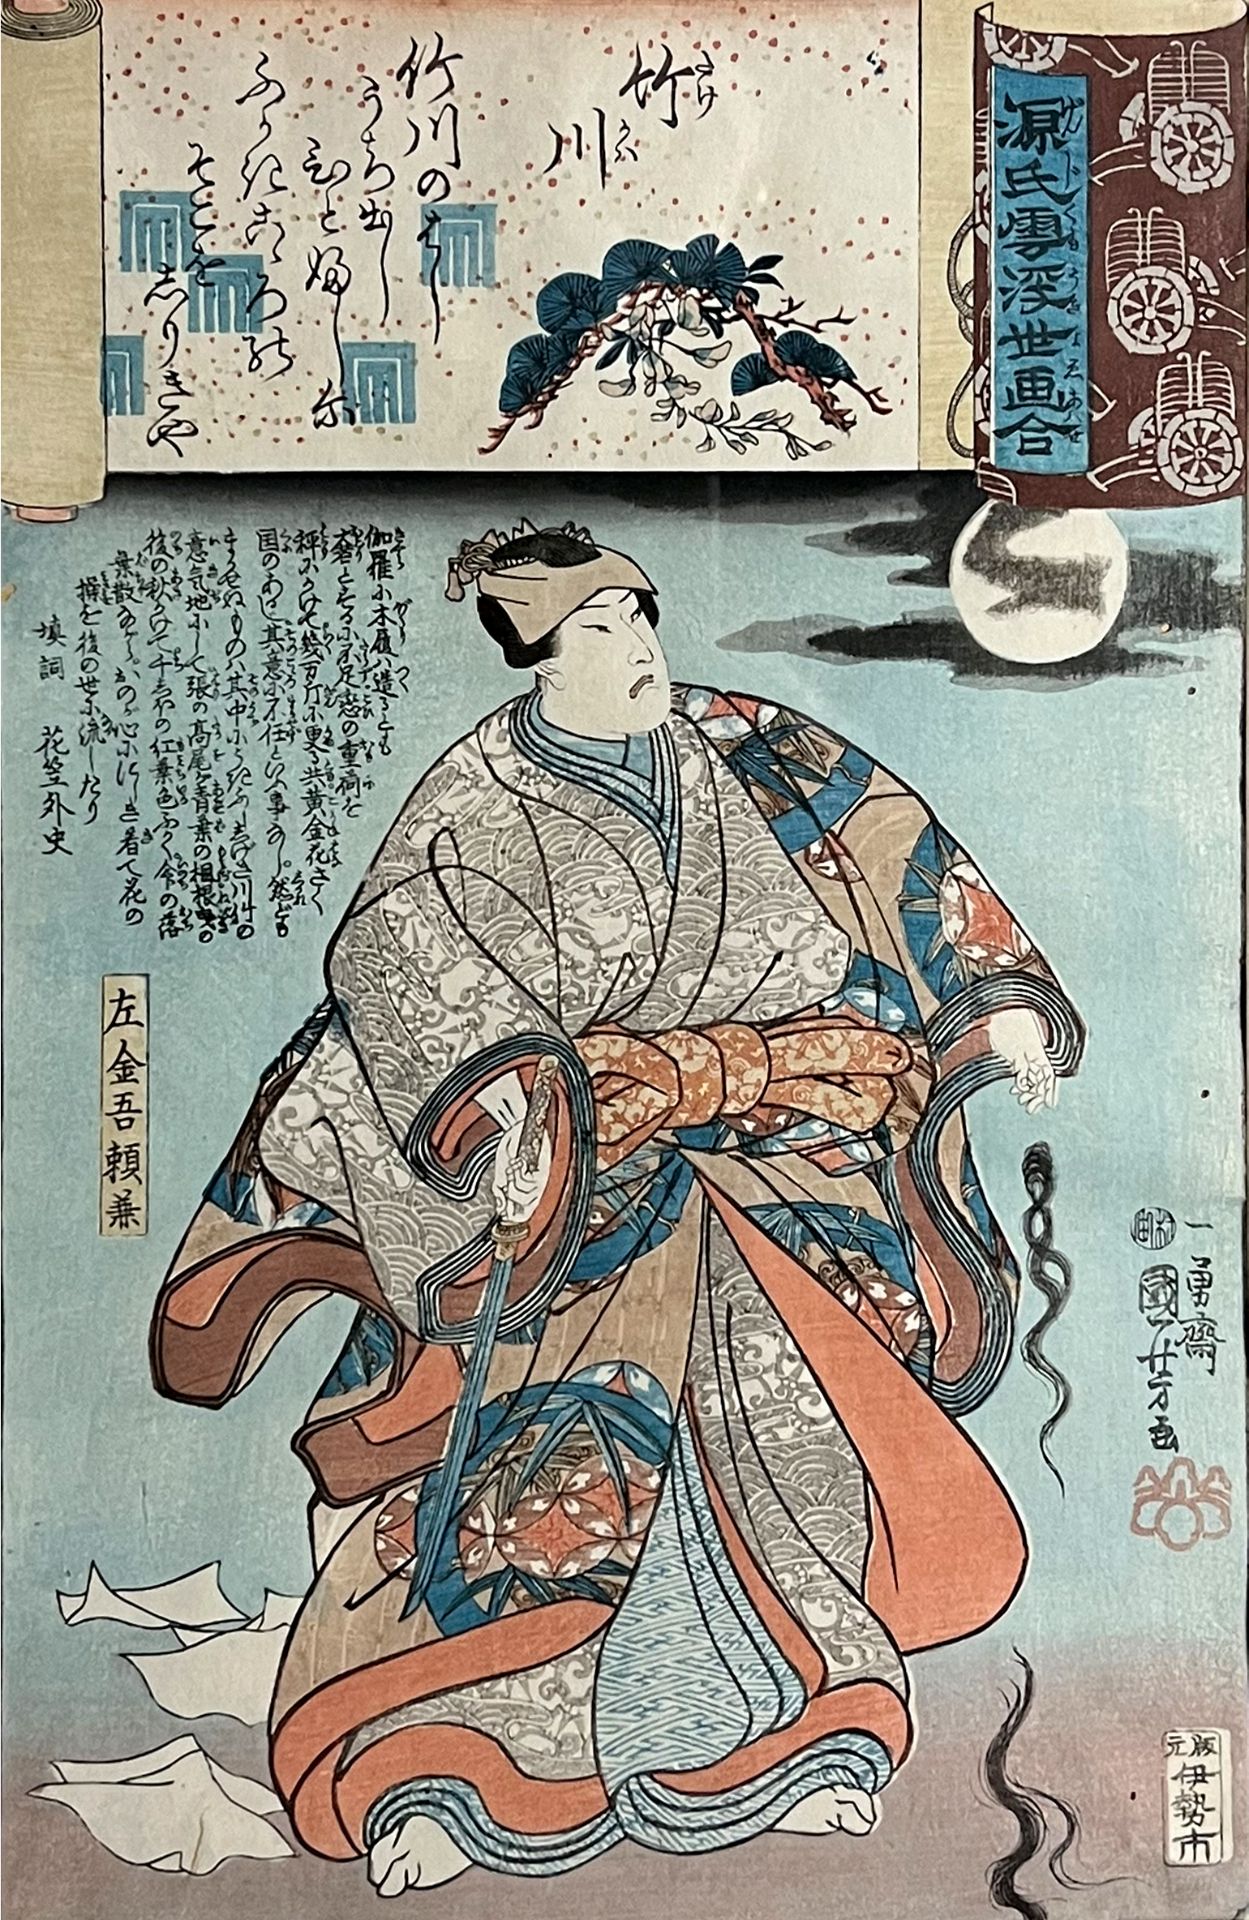 Kuniyoshi UTAGAWA (1798 - 1861). Takegawa. 1845.